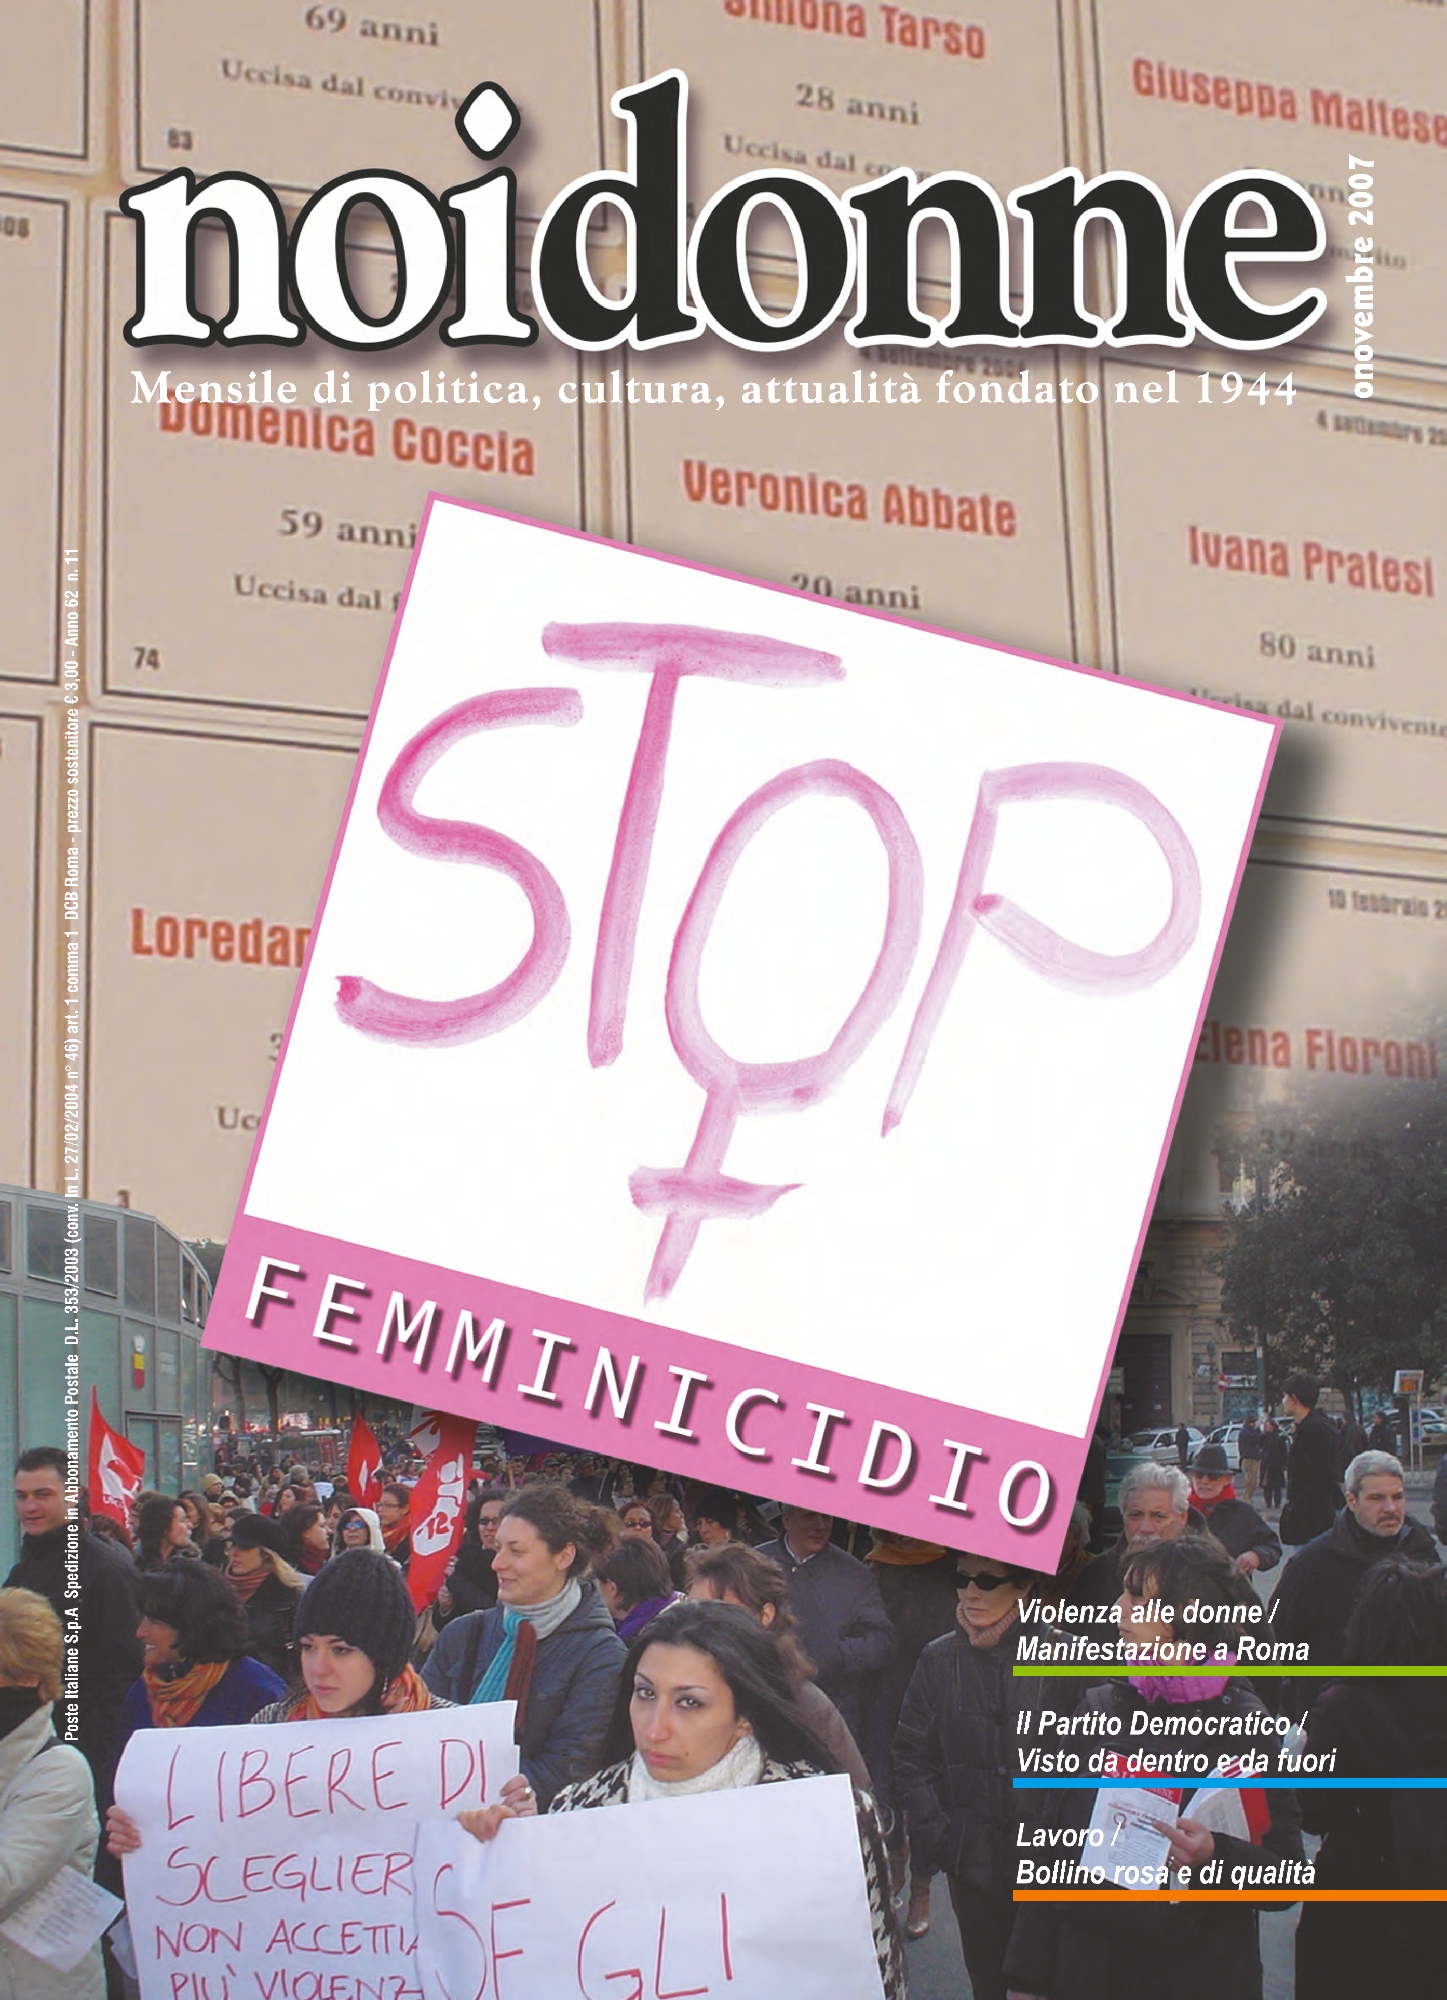 Foto: Stop femminicidio